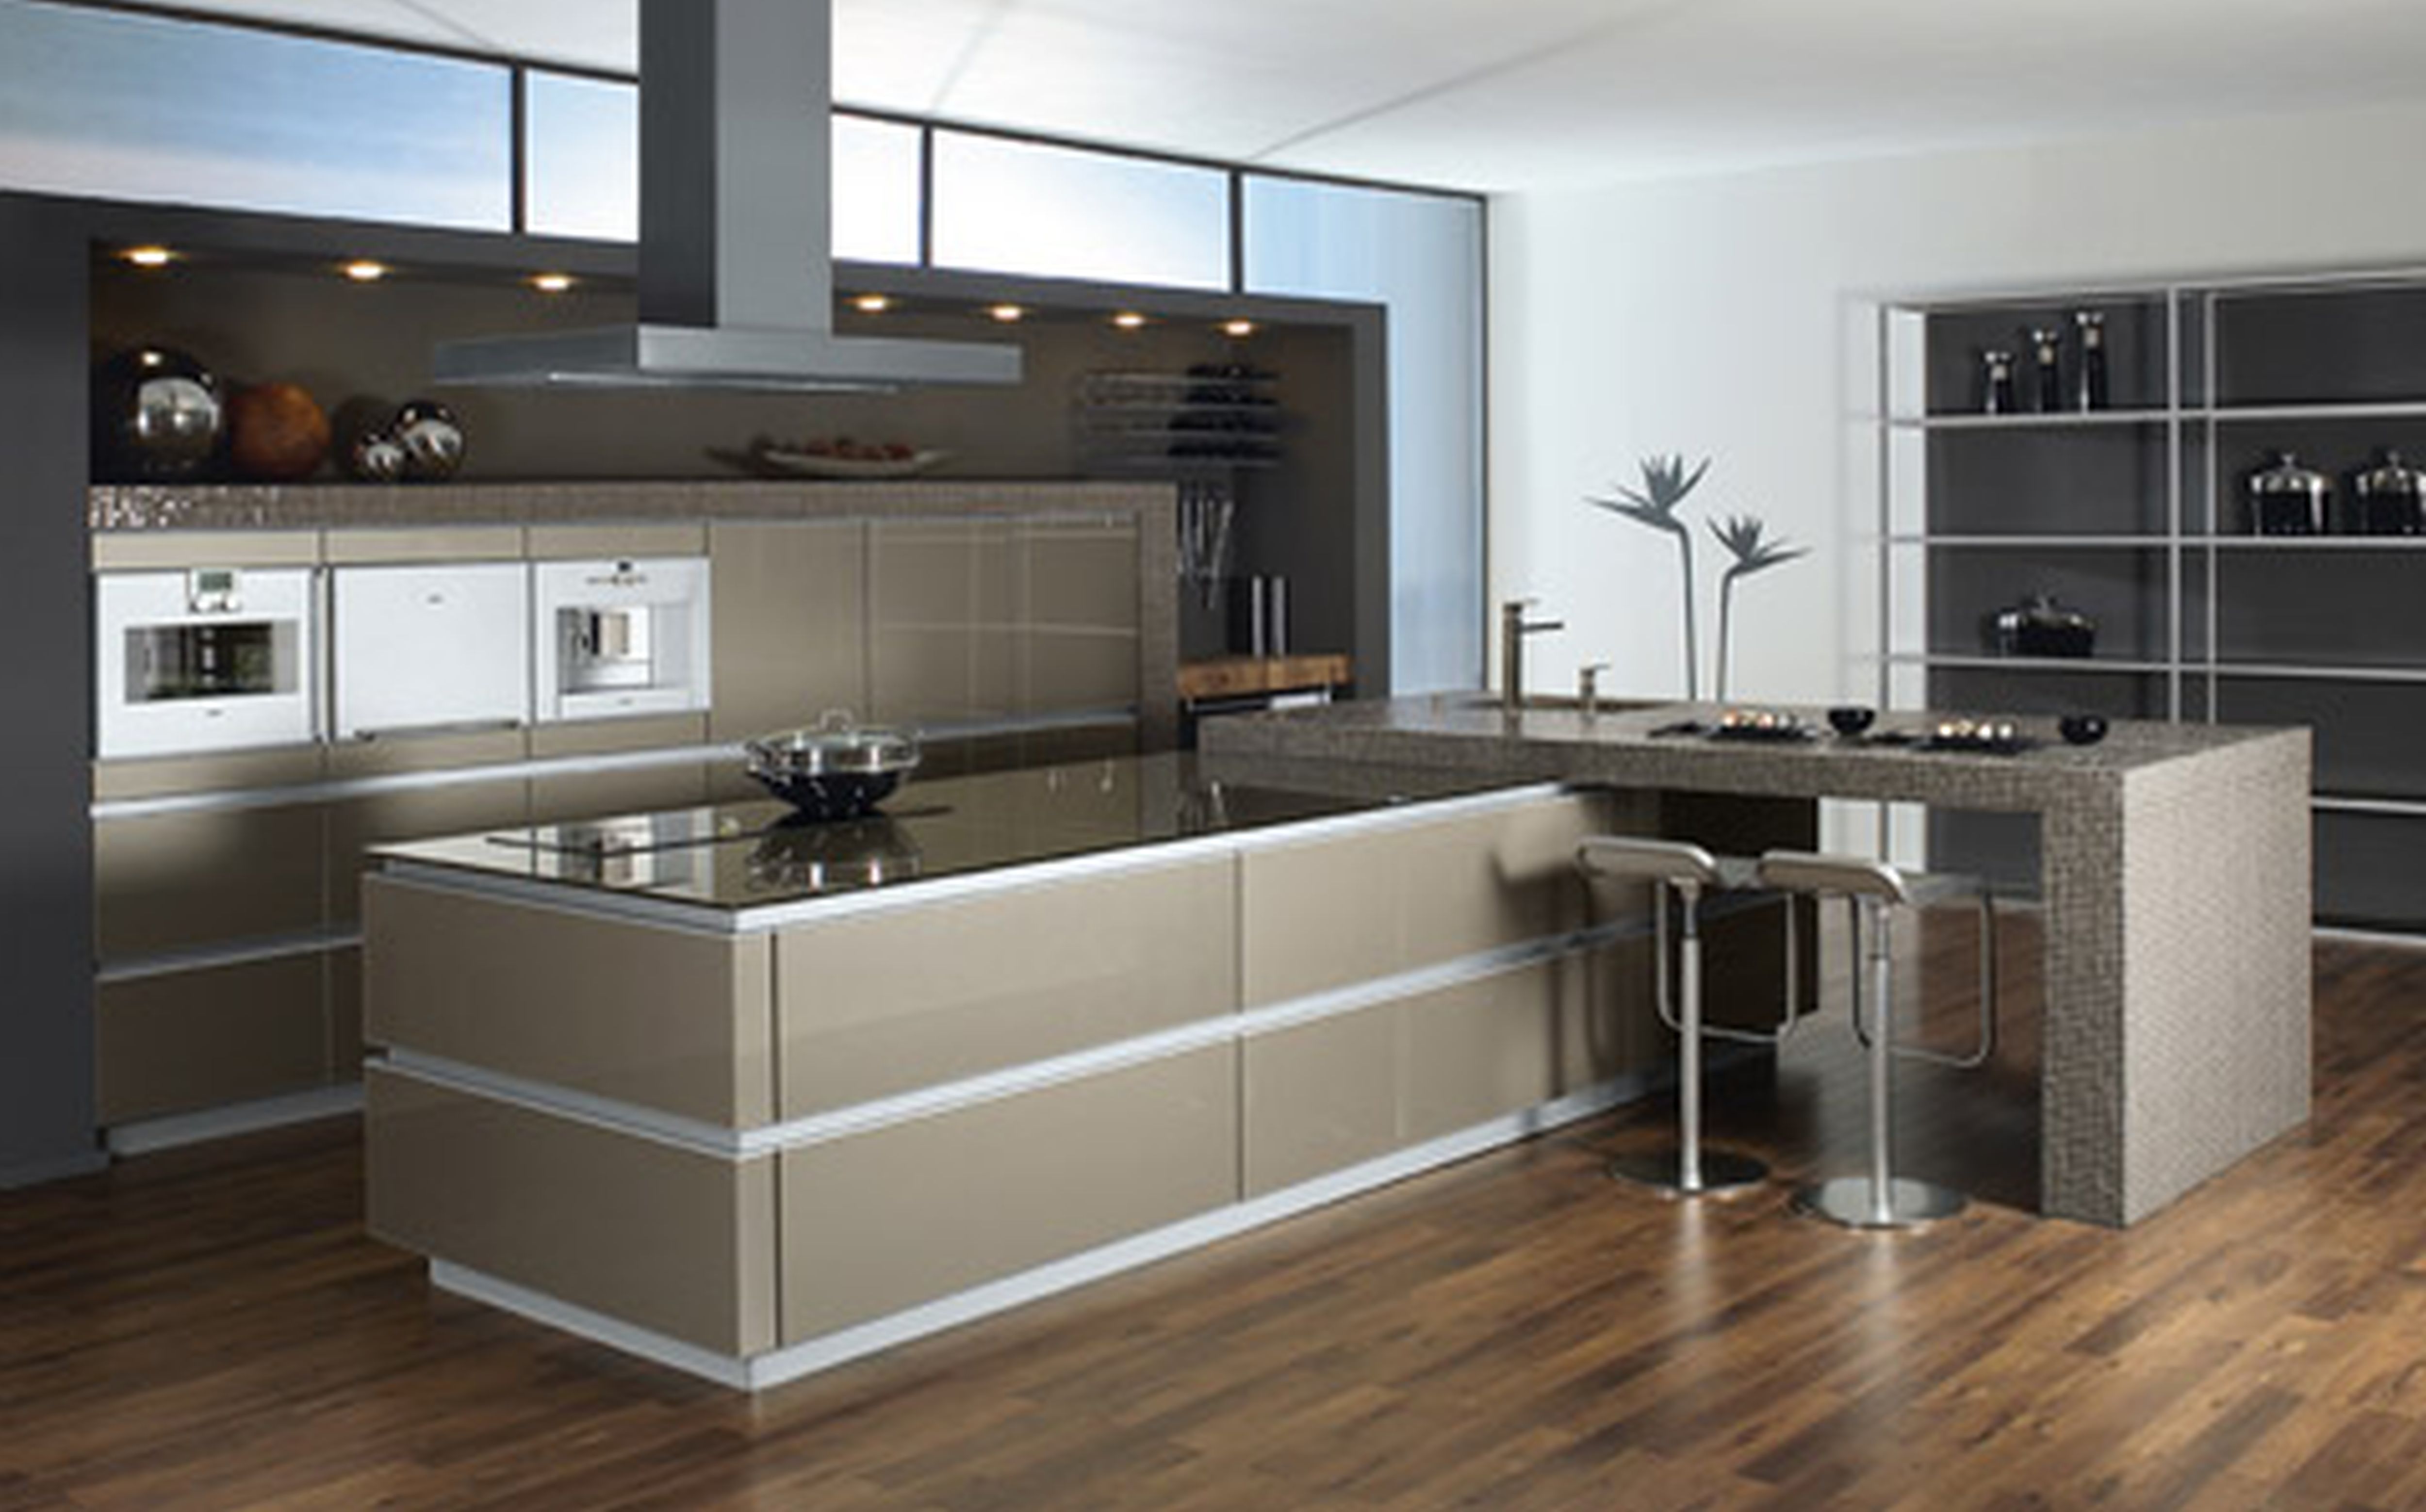  modern kitchen design